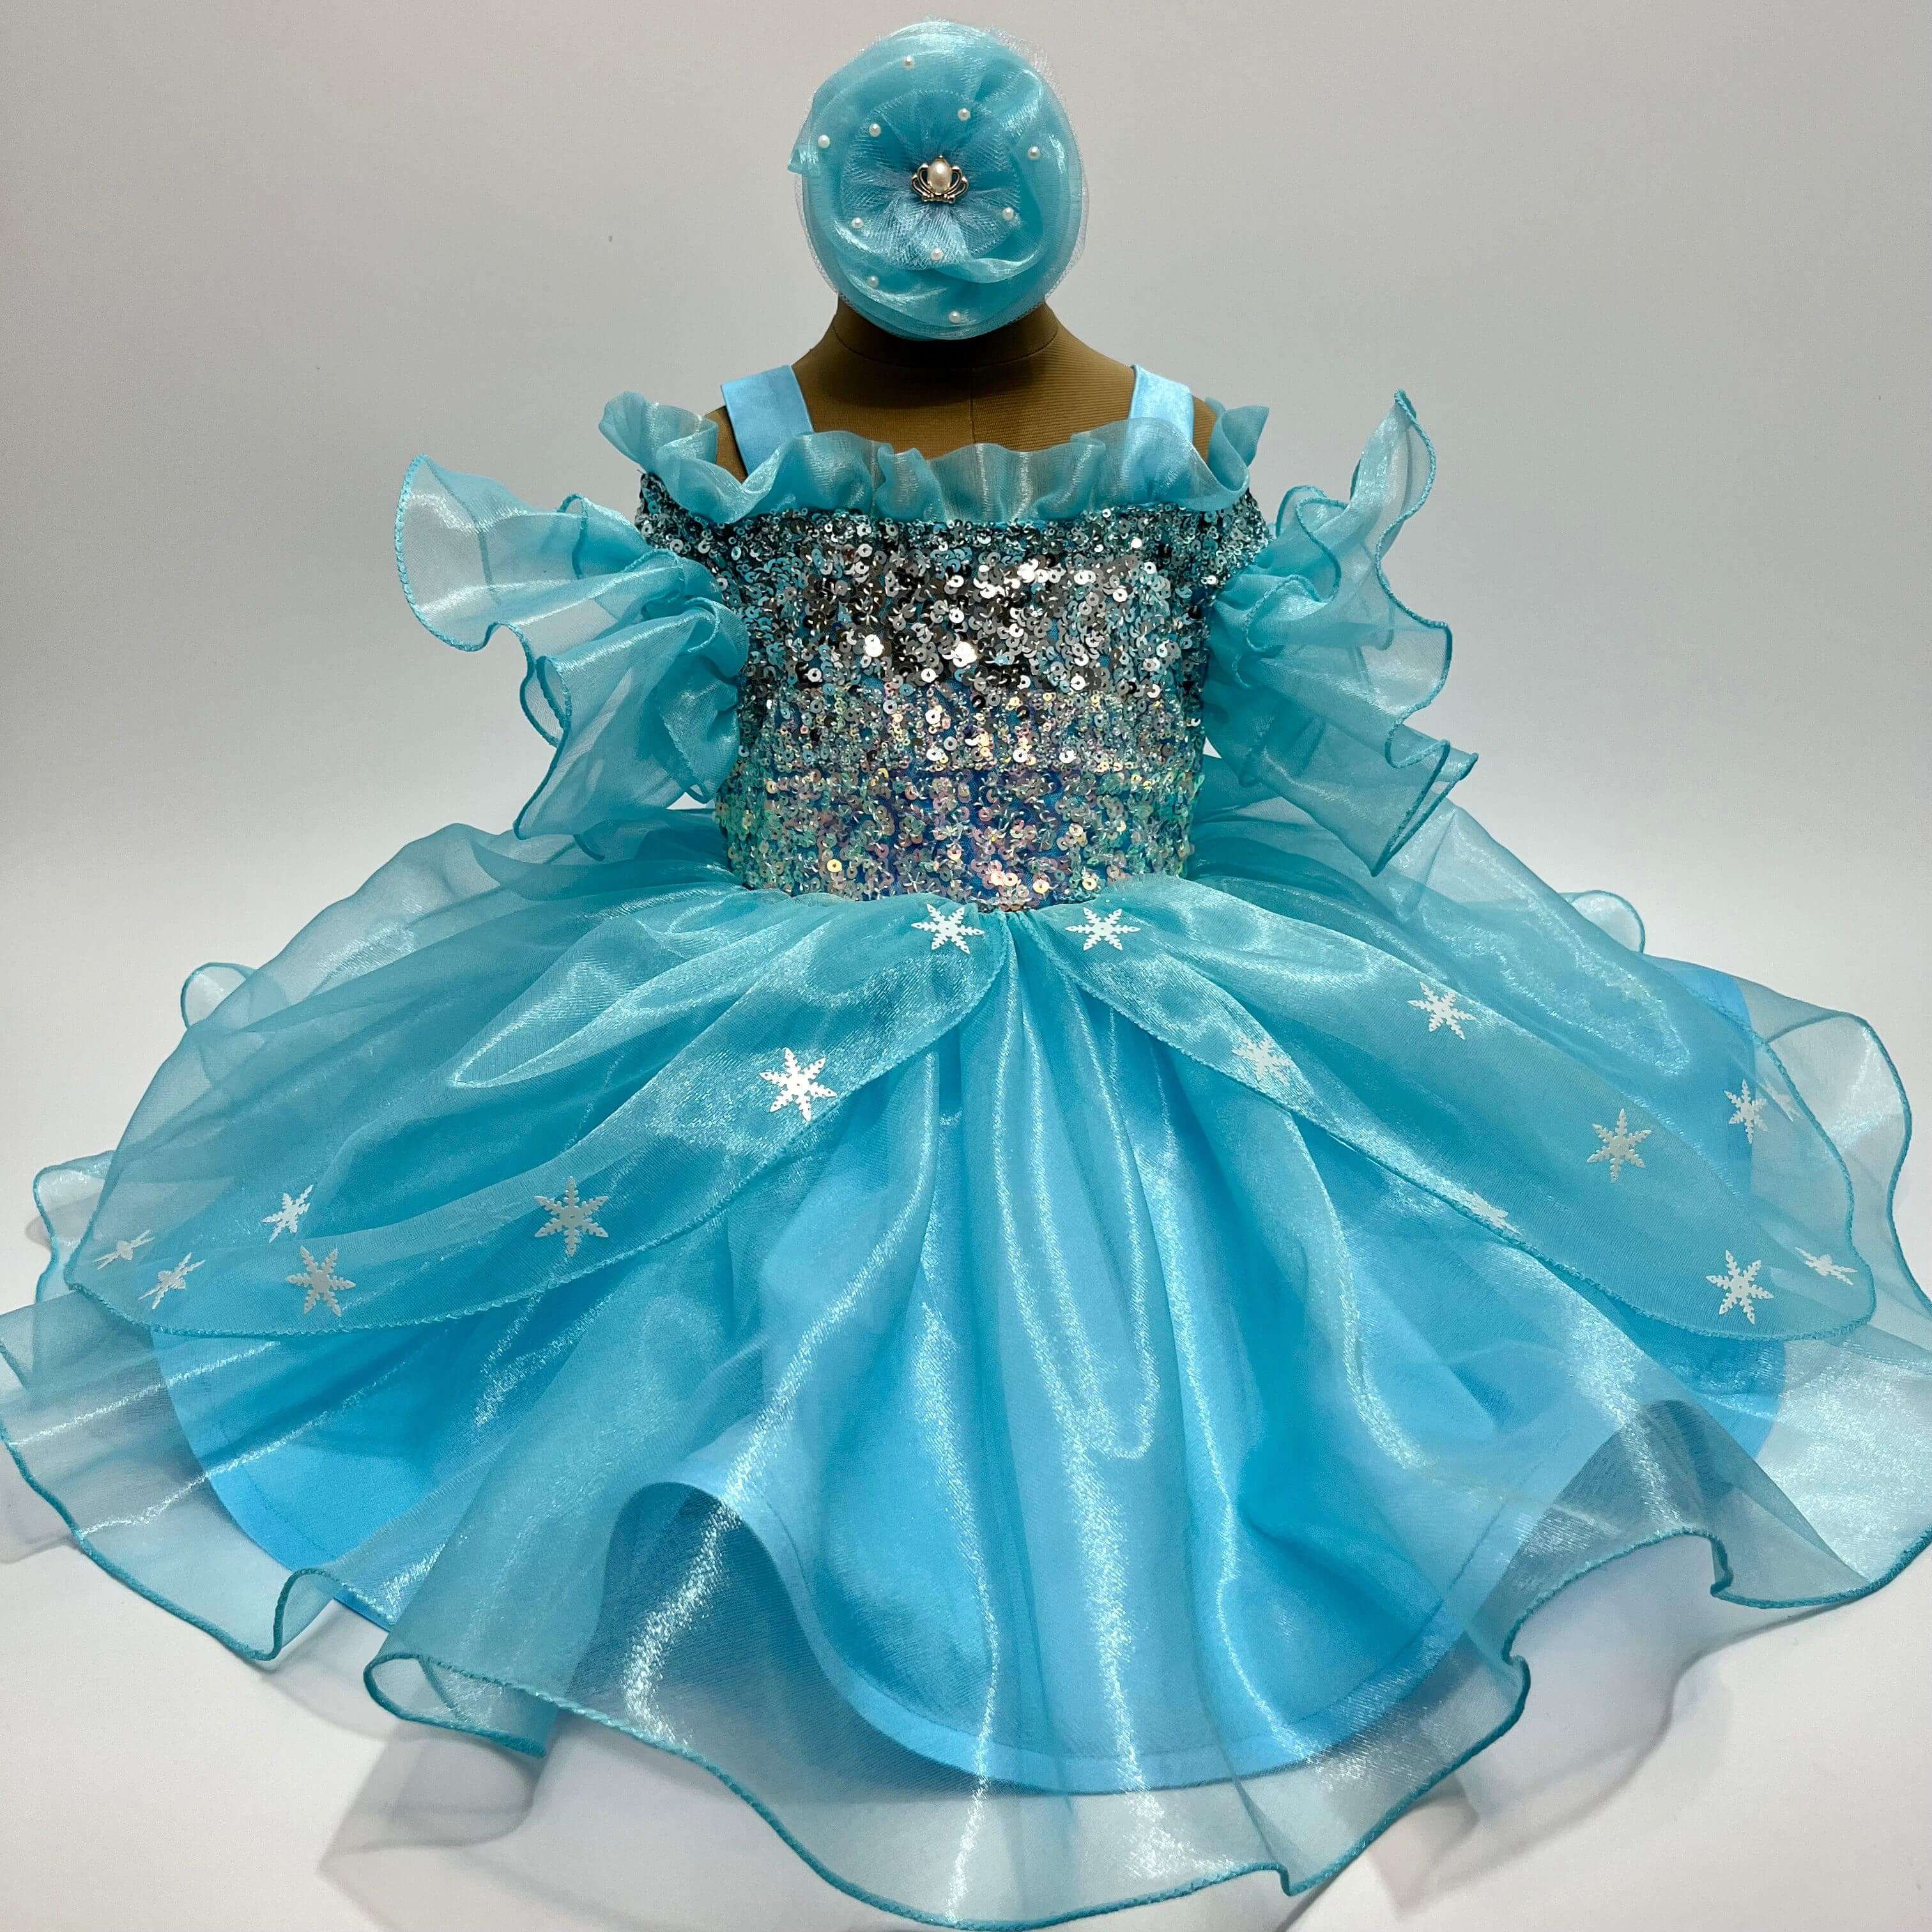 Children's Robe EplusM Disney Frozen (52409252)